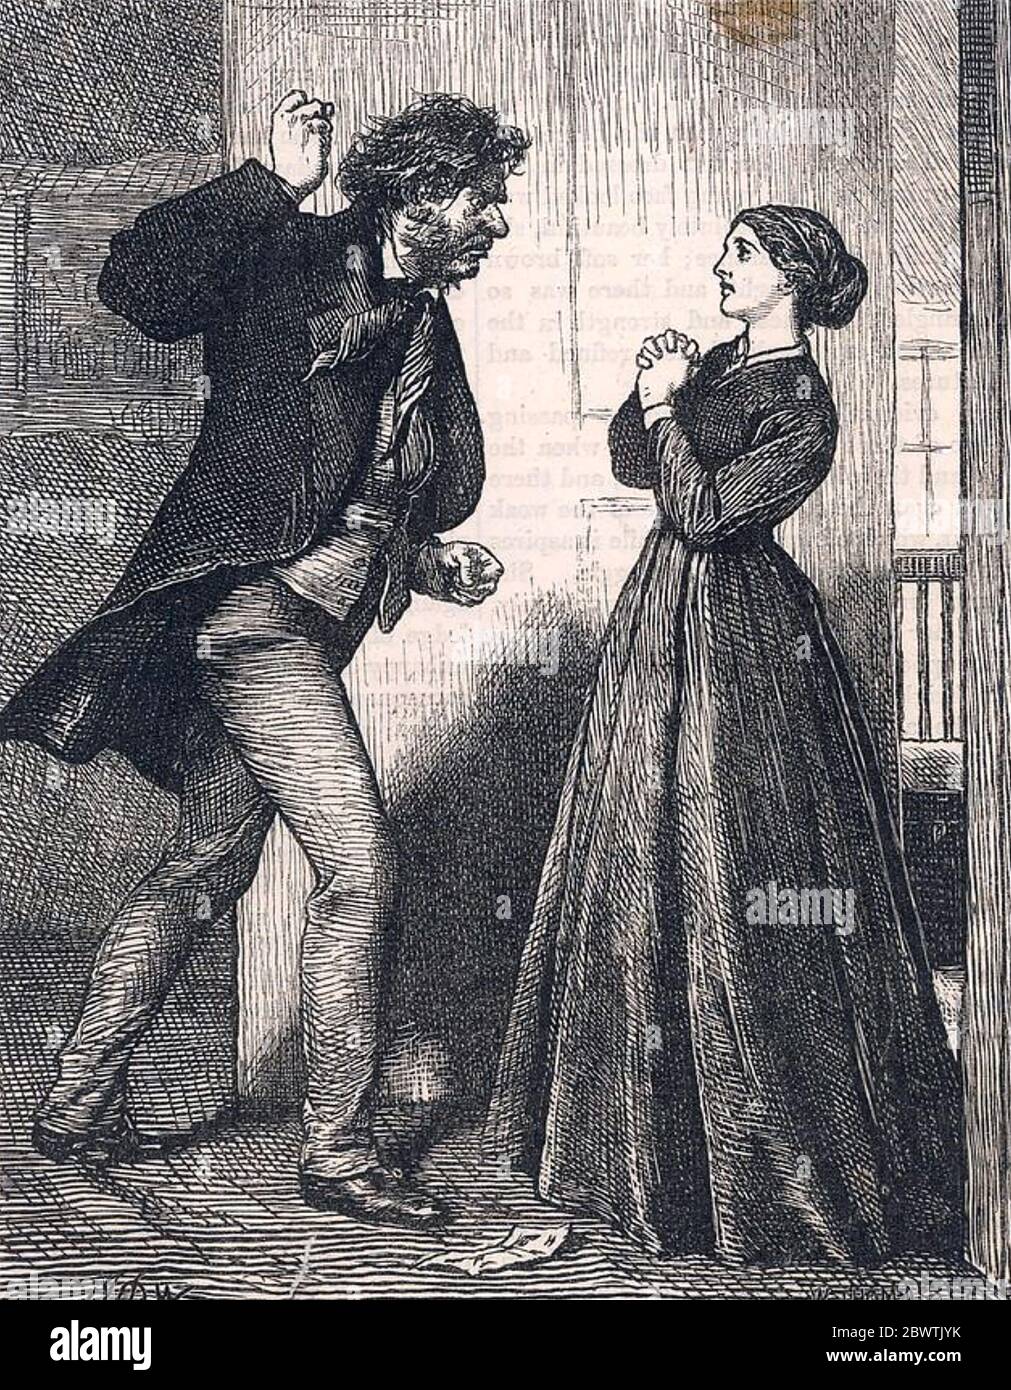 VIOLENZA DOMESTICA come raffigurato per un romanzo del 19 ° secolo Foto Stock